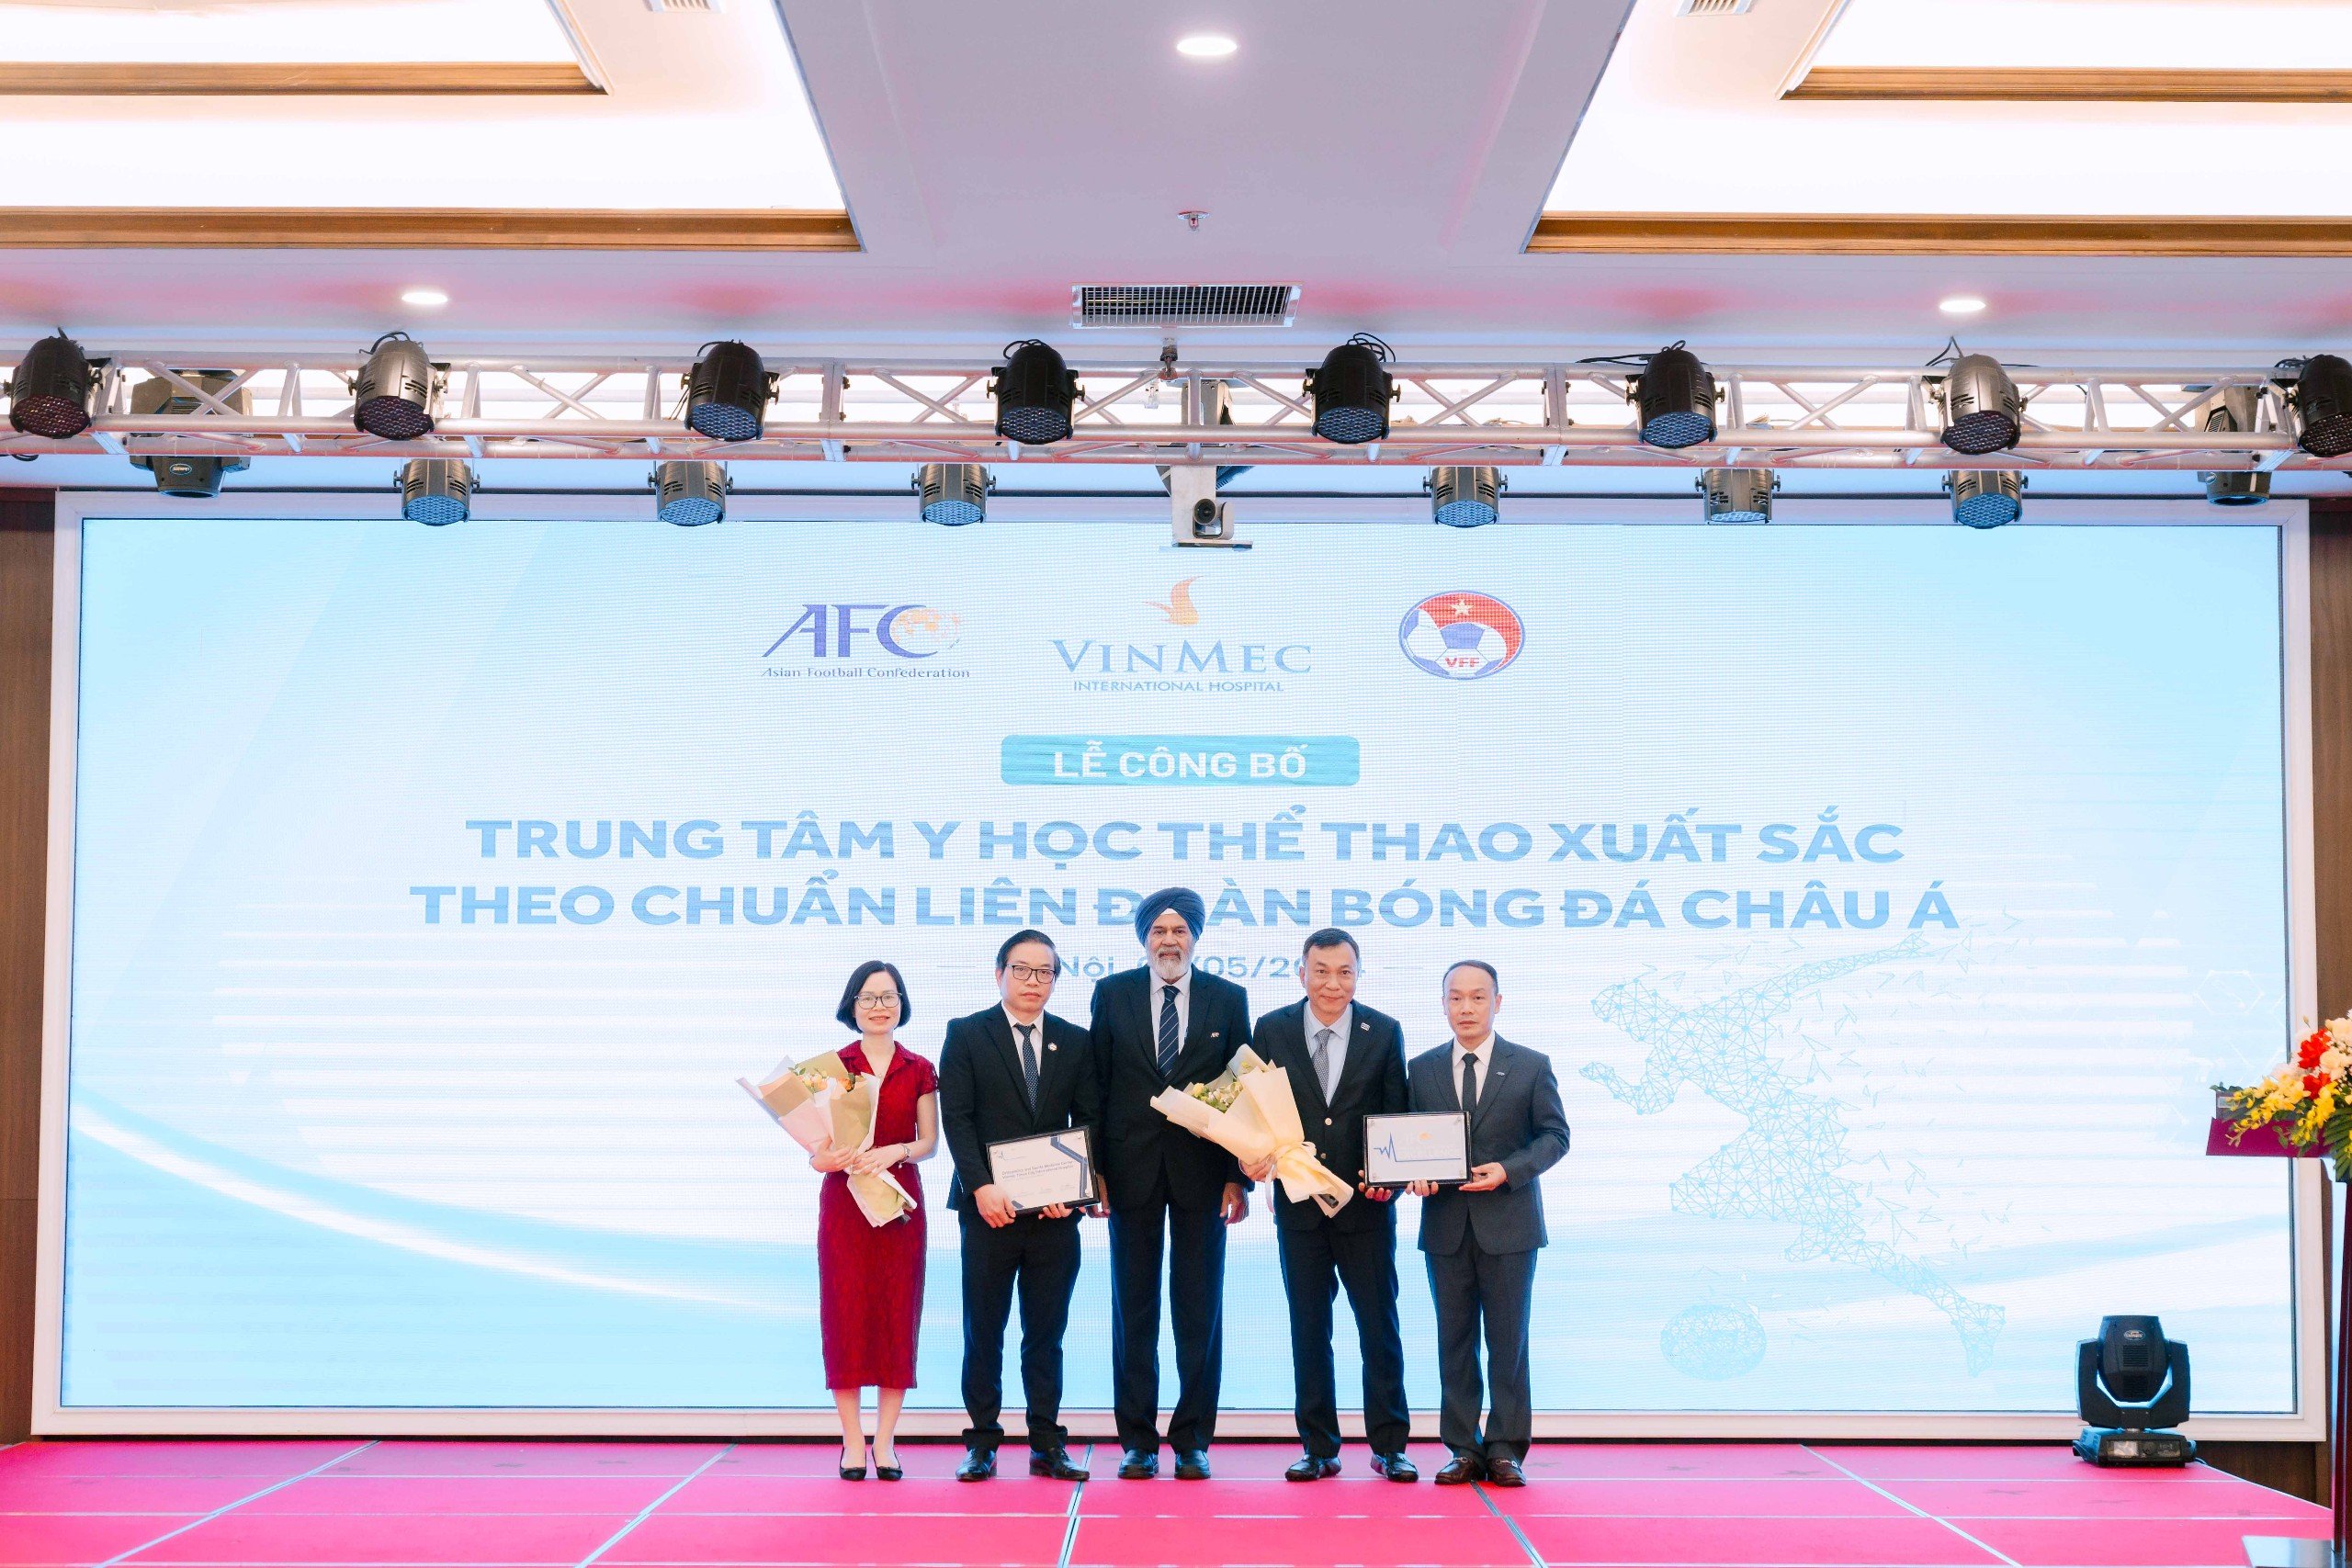 Đại diện duy nhất Việt Nam được LĐBĐ Châu Á công nhận là Trung tâm y học thể thao xuất sắc- Ảnh 1.